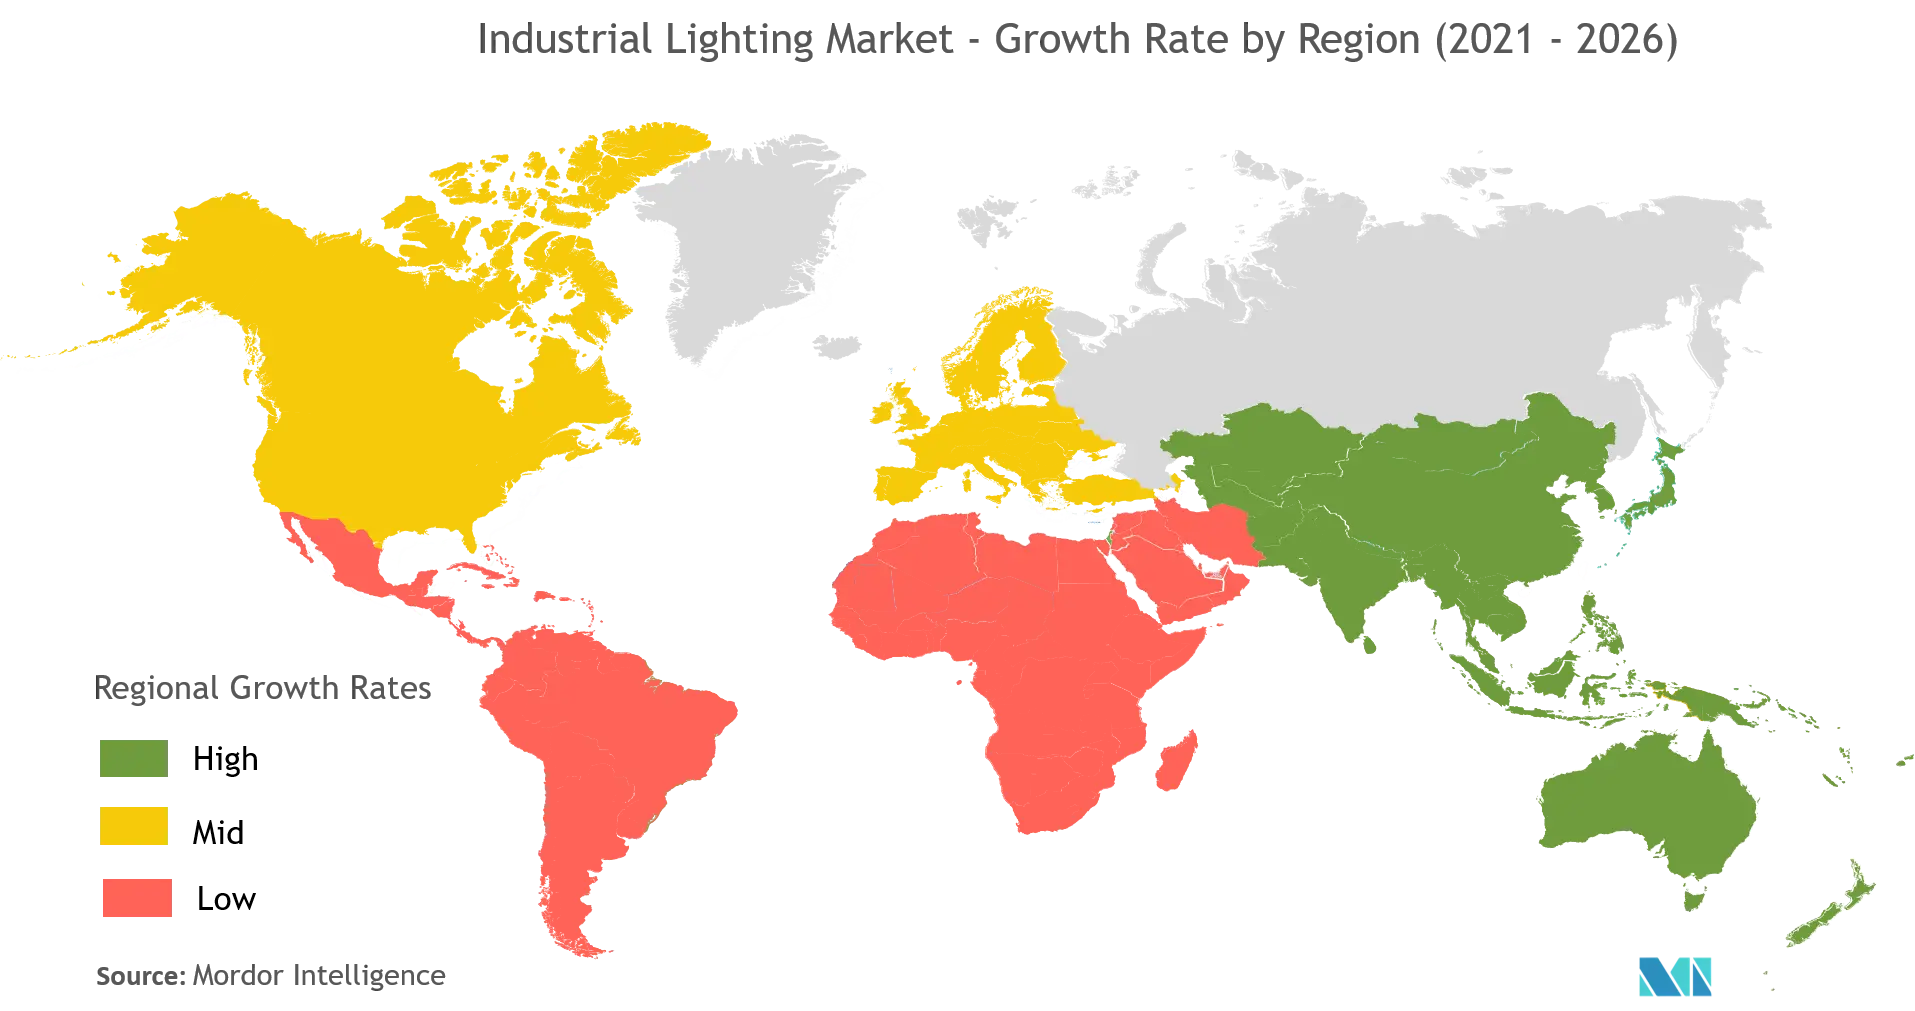 Industrial Lighting Market Report